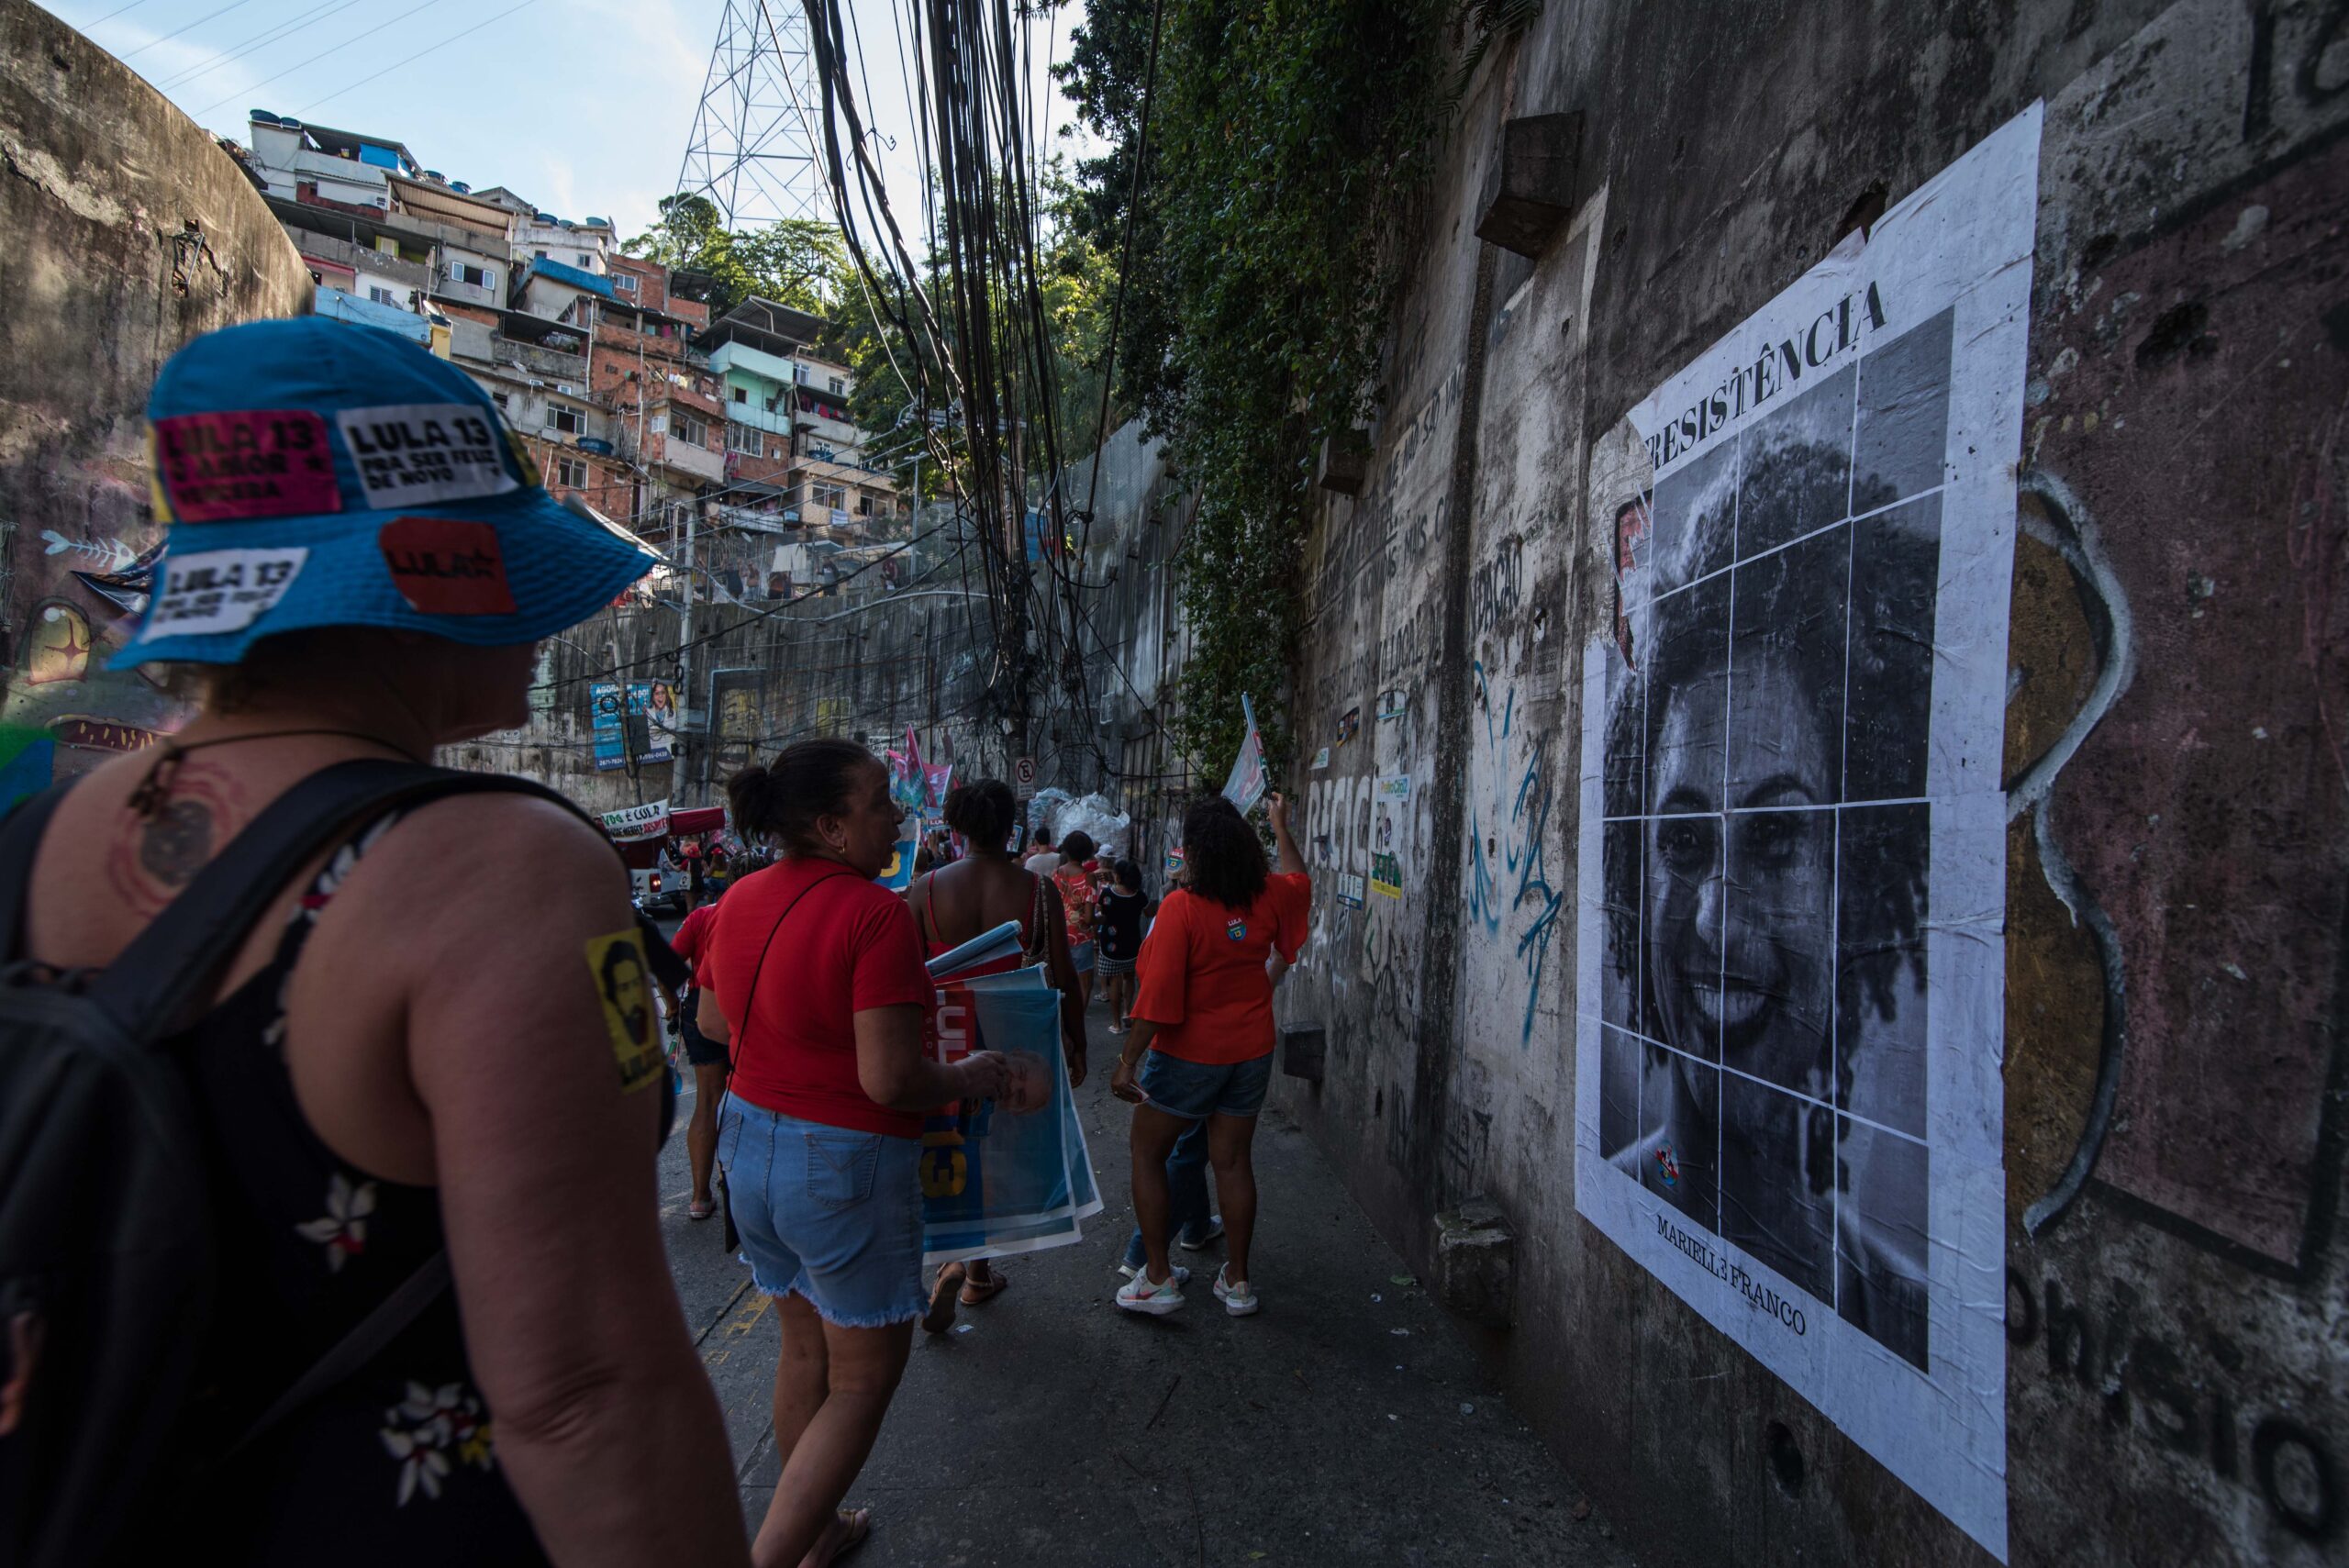 A Caminhada Rocinha com Lula movimentou as ruas, trouxe esperança aos que participaram e registrou um importante momento de luta das favelas pela democracia. Foto: Bárbara Dias/RioOnWatch